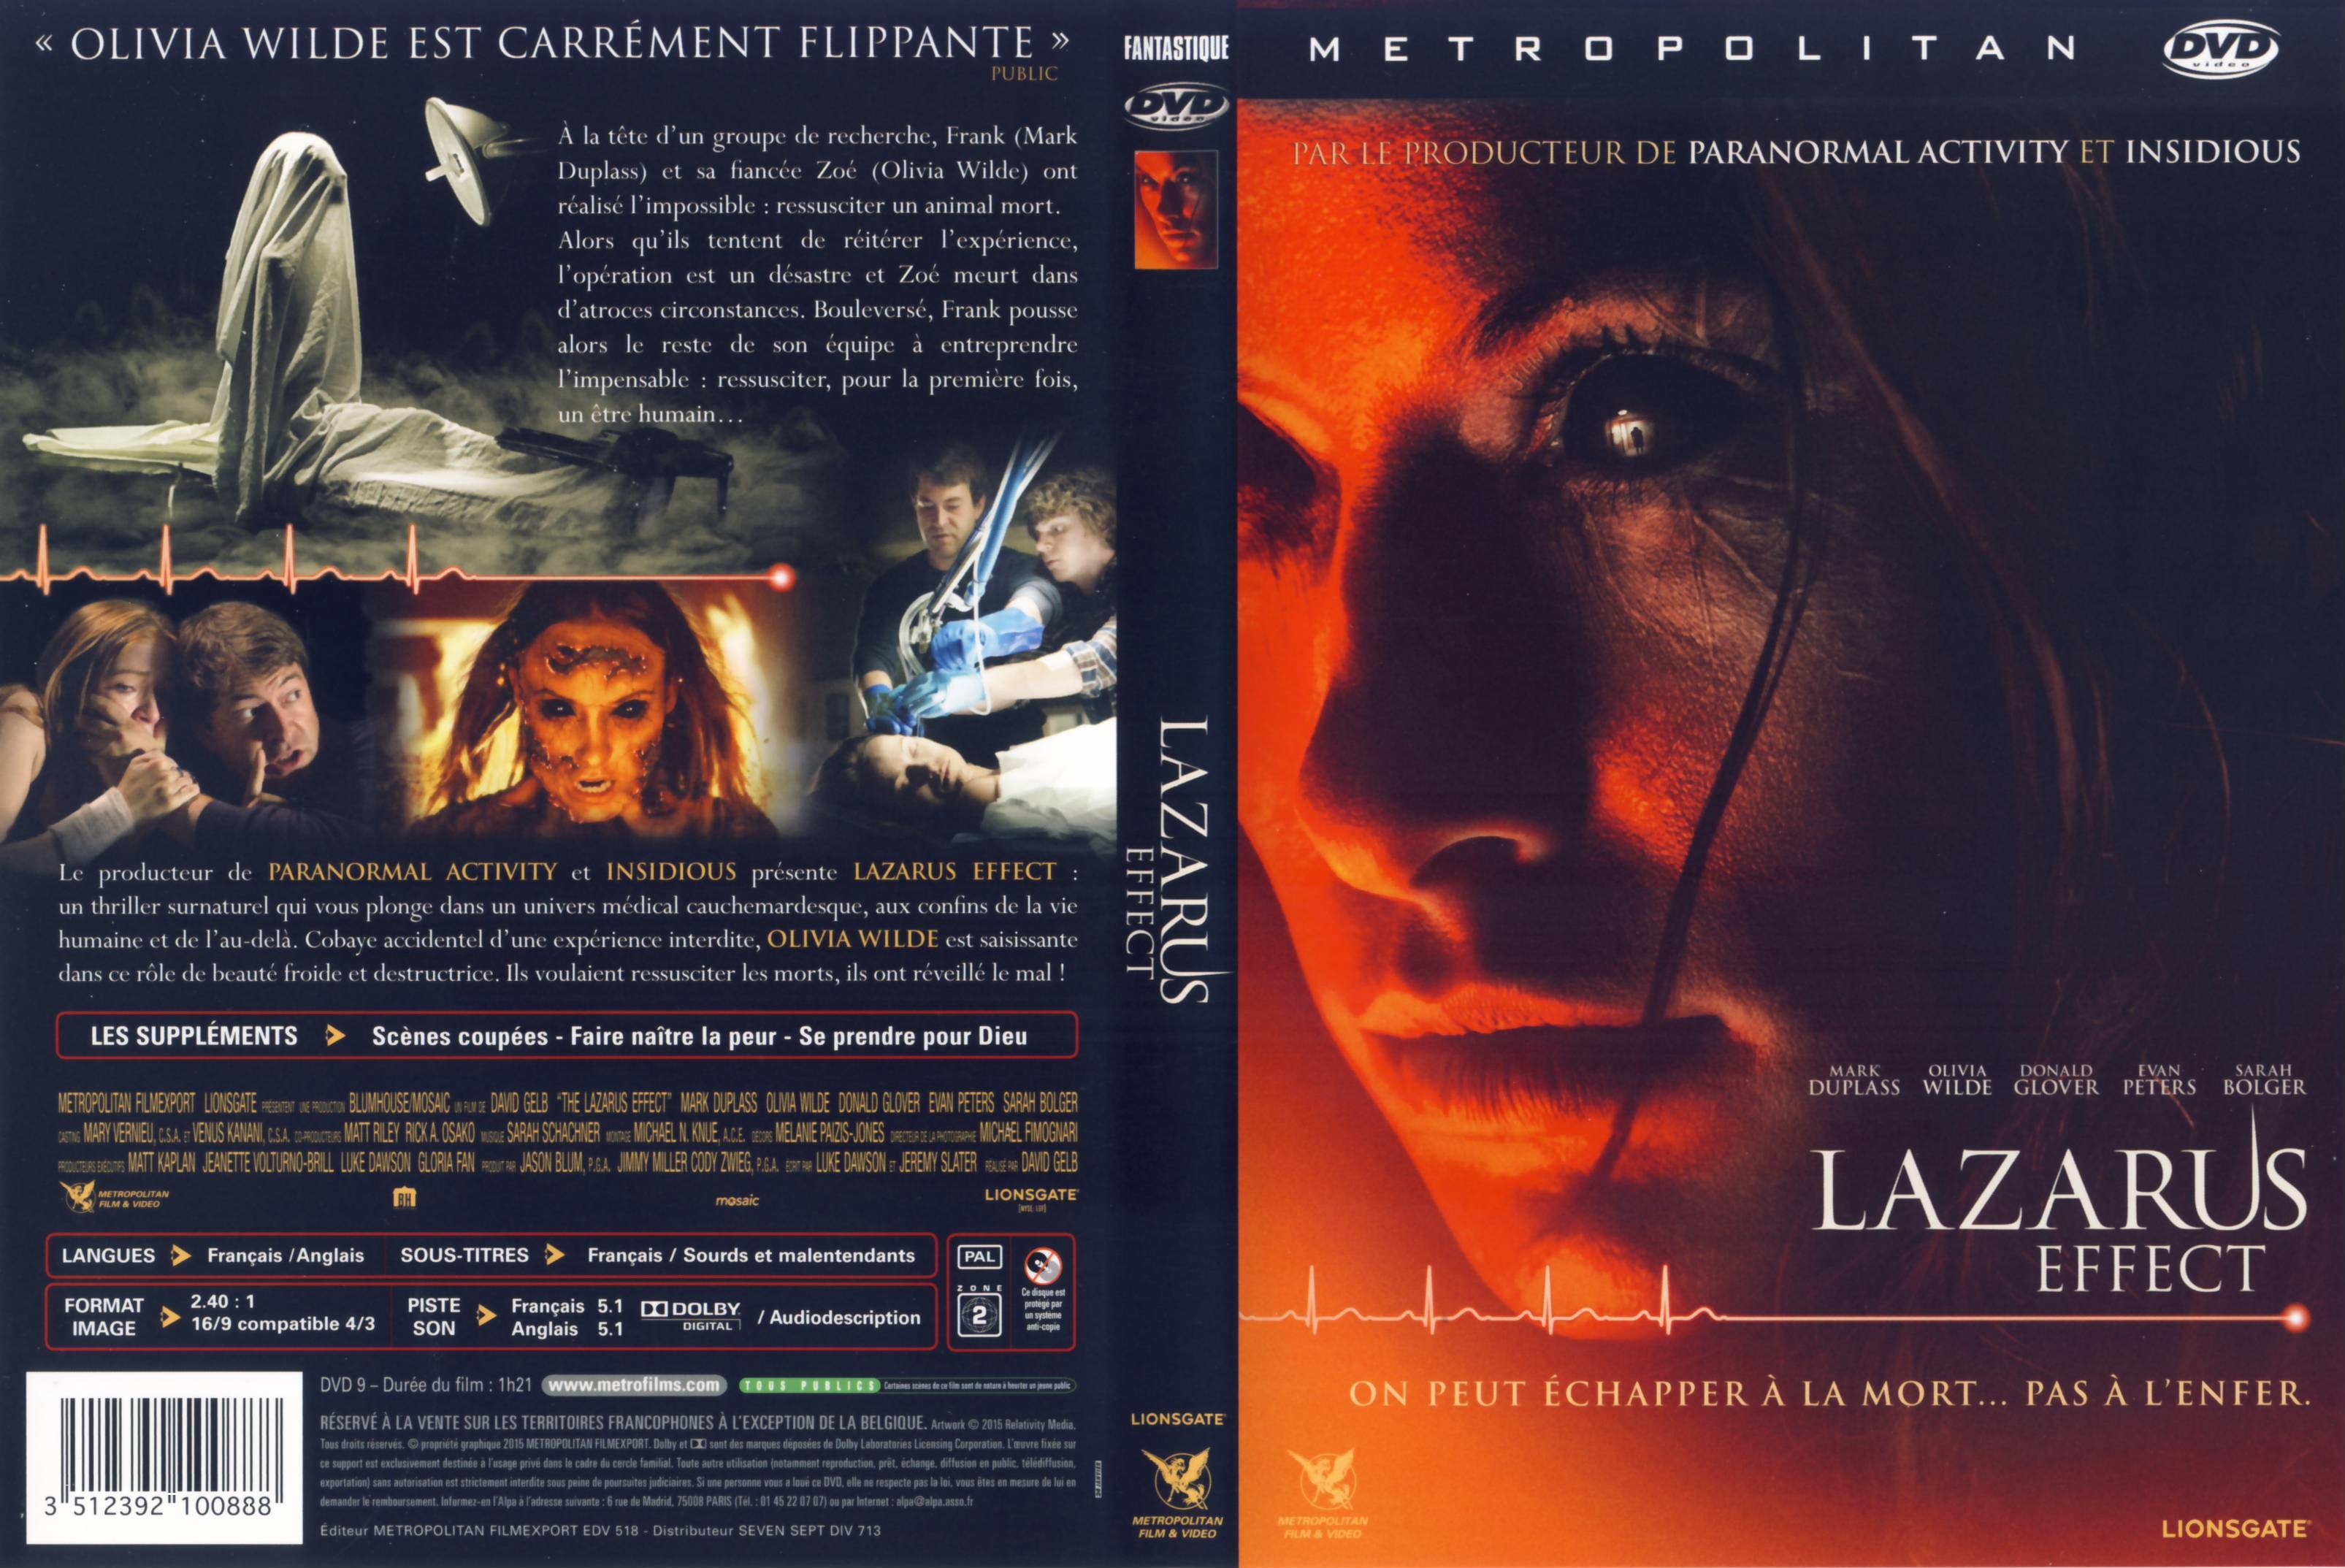 Jaquette DVD Lazarus Effect